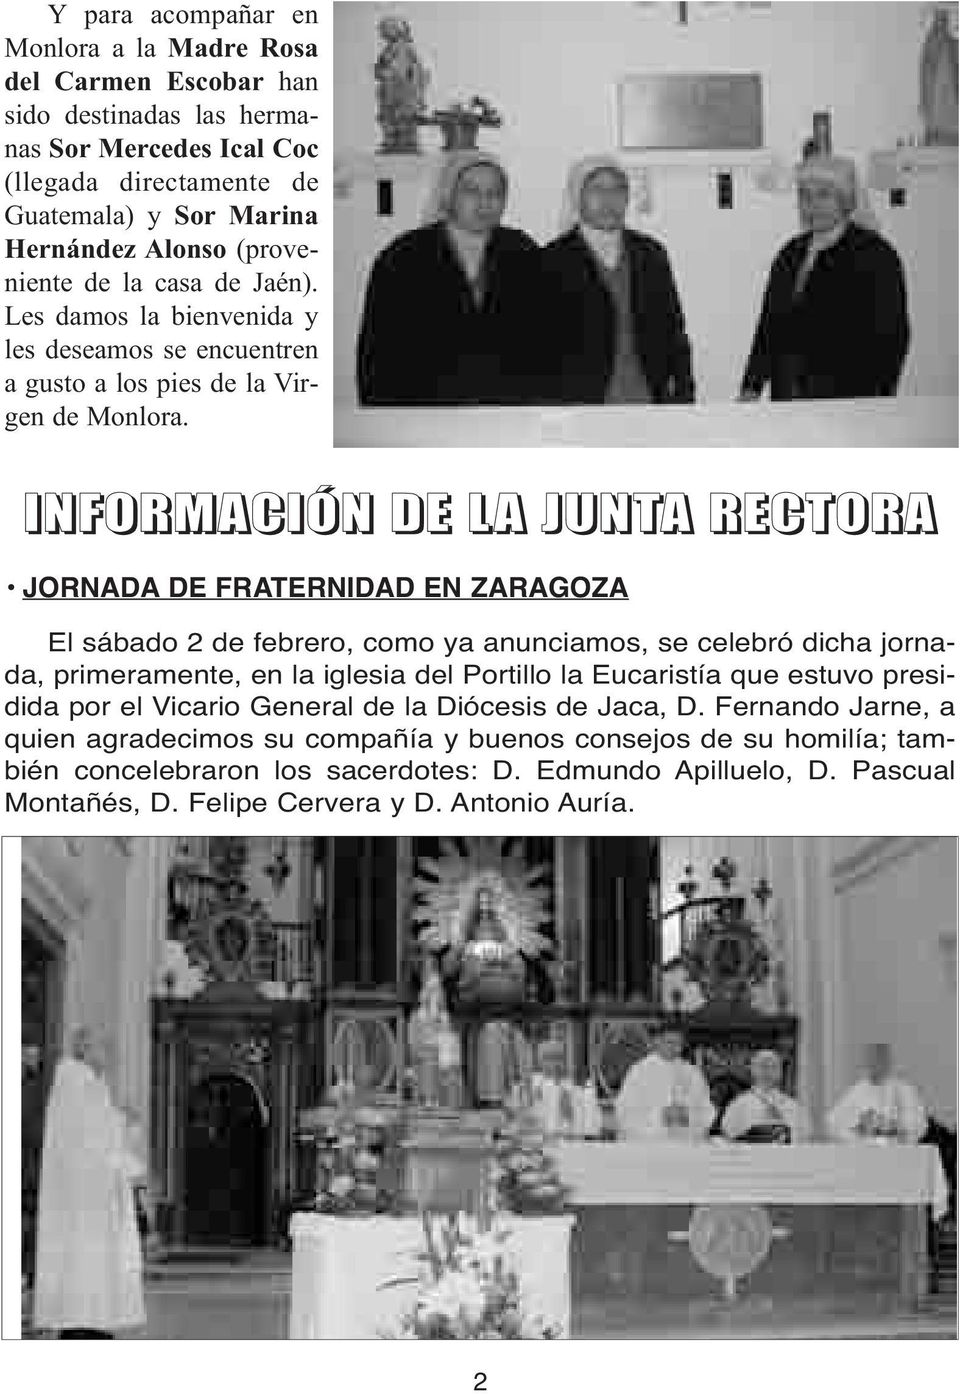 INFORMACIÓN DE LA JUNTA RECTORA JORNADA DE FRATERNIDAD EN ZARAGOZA El sábado 2 de febrero, como ya anunciamos, se celebró dicha jornada, primeramente, en la iglesia del Portillo la Eucaristía